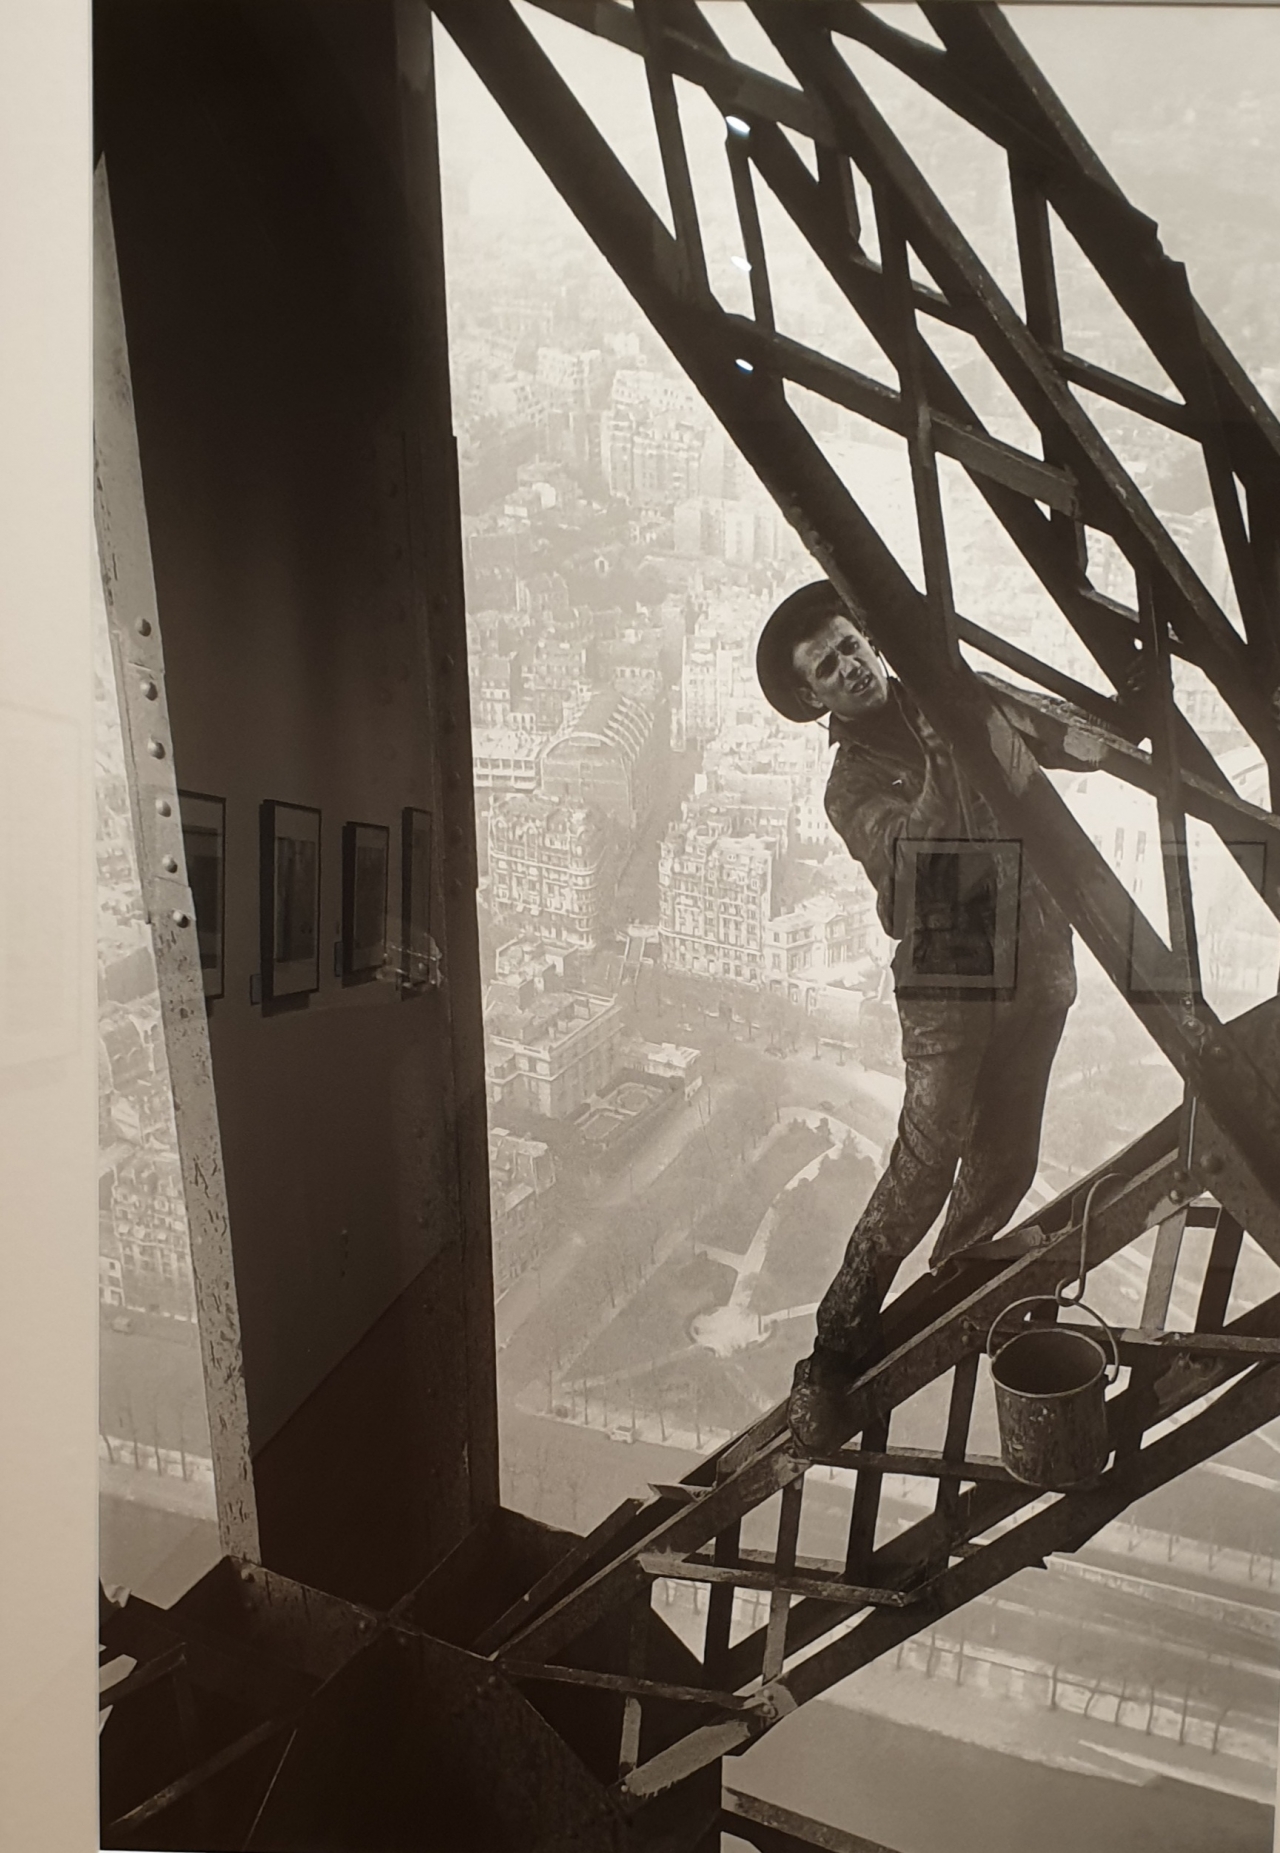 '마크 리부'의 대표작. 우연히 올려다본 에펠탑 위에서 도색 작업에 열중한 페인트공을 보고 바로 에펠탑에 올라가 안전 장치도 없이 목숨을 걸고 찍은 이 사진은 파리의 노동자의 현실과 도시의 우아함을 포착했다.